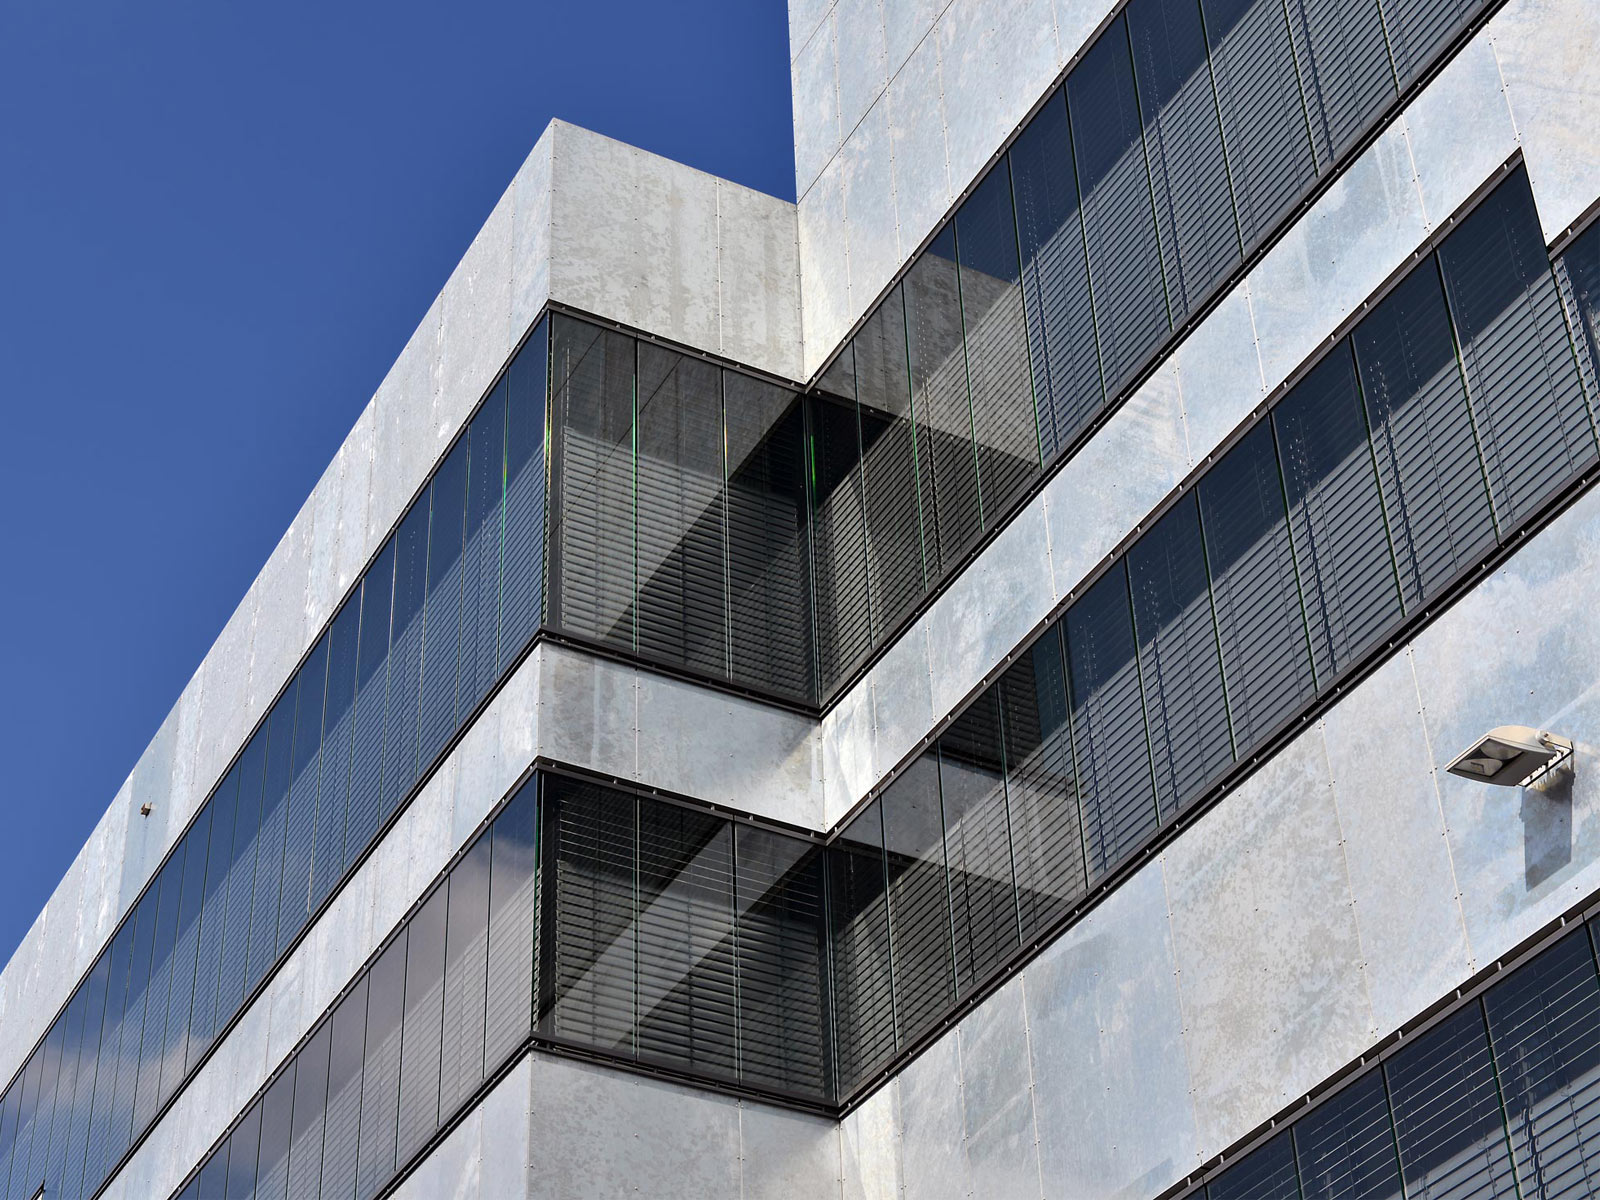 Gebäude von unten fotografiert: Graue Metallfassade und geschlossenen Jalousien